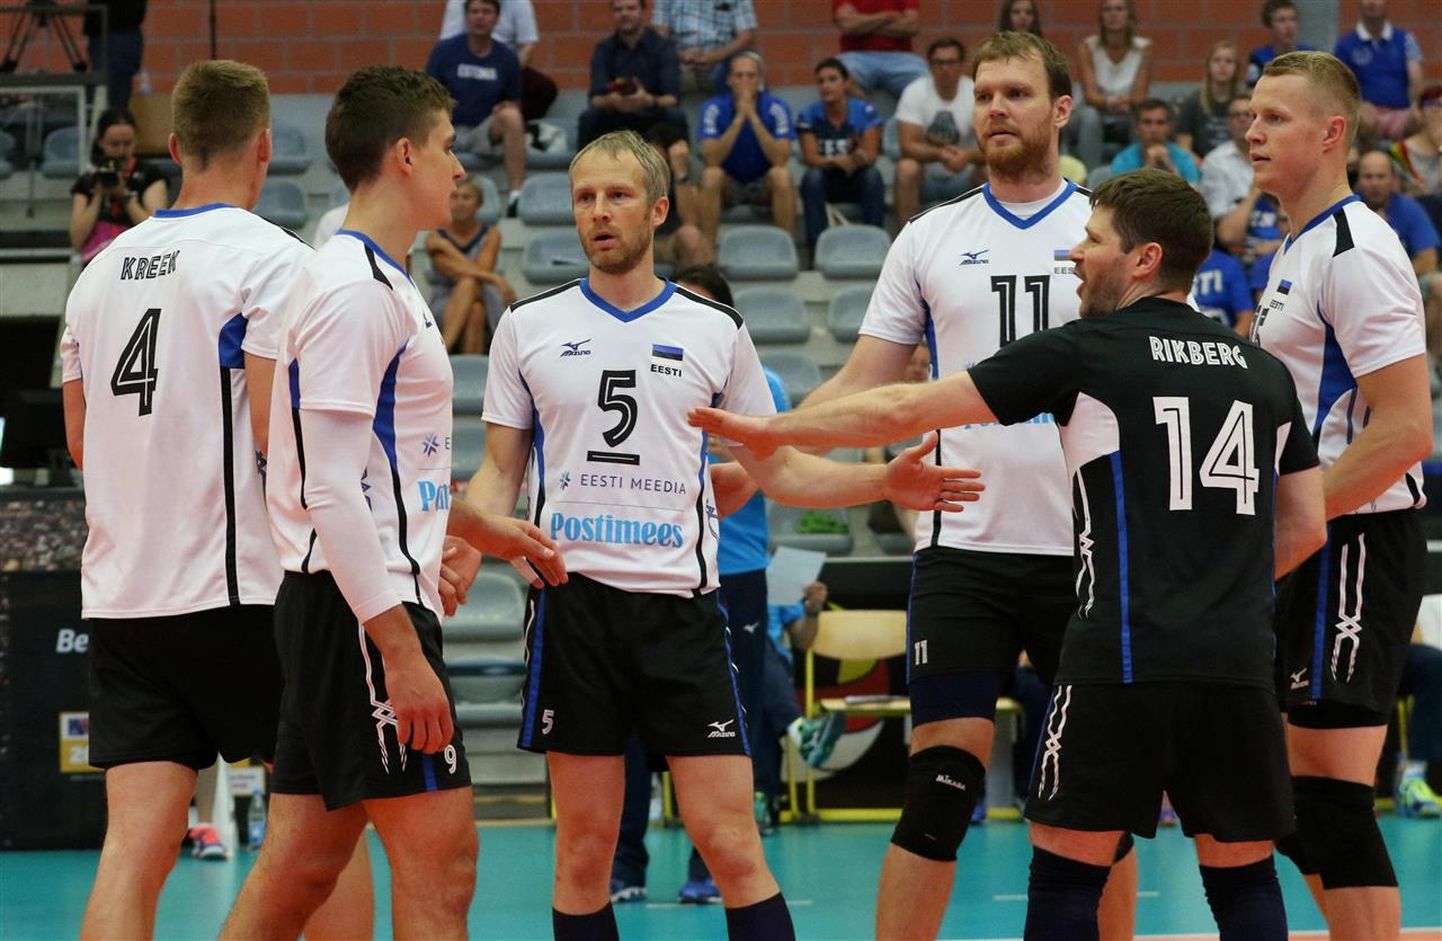 Eesti võrkpallikoondisel on MM-valikturniiril küll mitu meest eesotsas Ardo Kreegi (vasakul) ja Andrus Raadikuga (paremal) puudu, ent parima koondisega pole suve esimeses pooles väljas ka sisuliselt ükski Eesti konkurent.